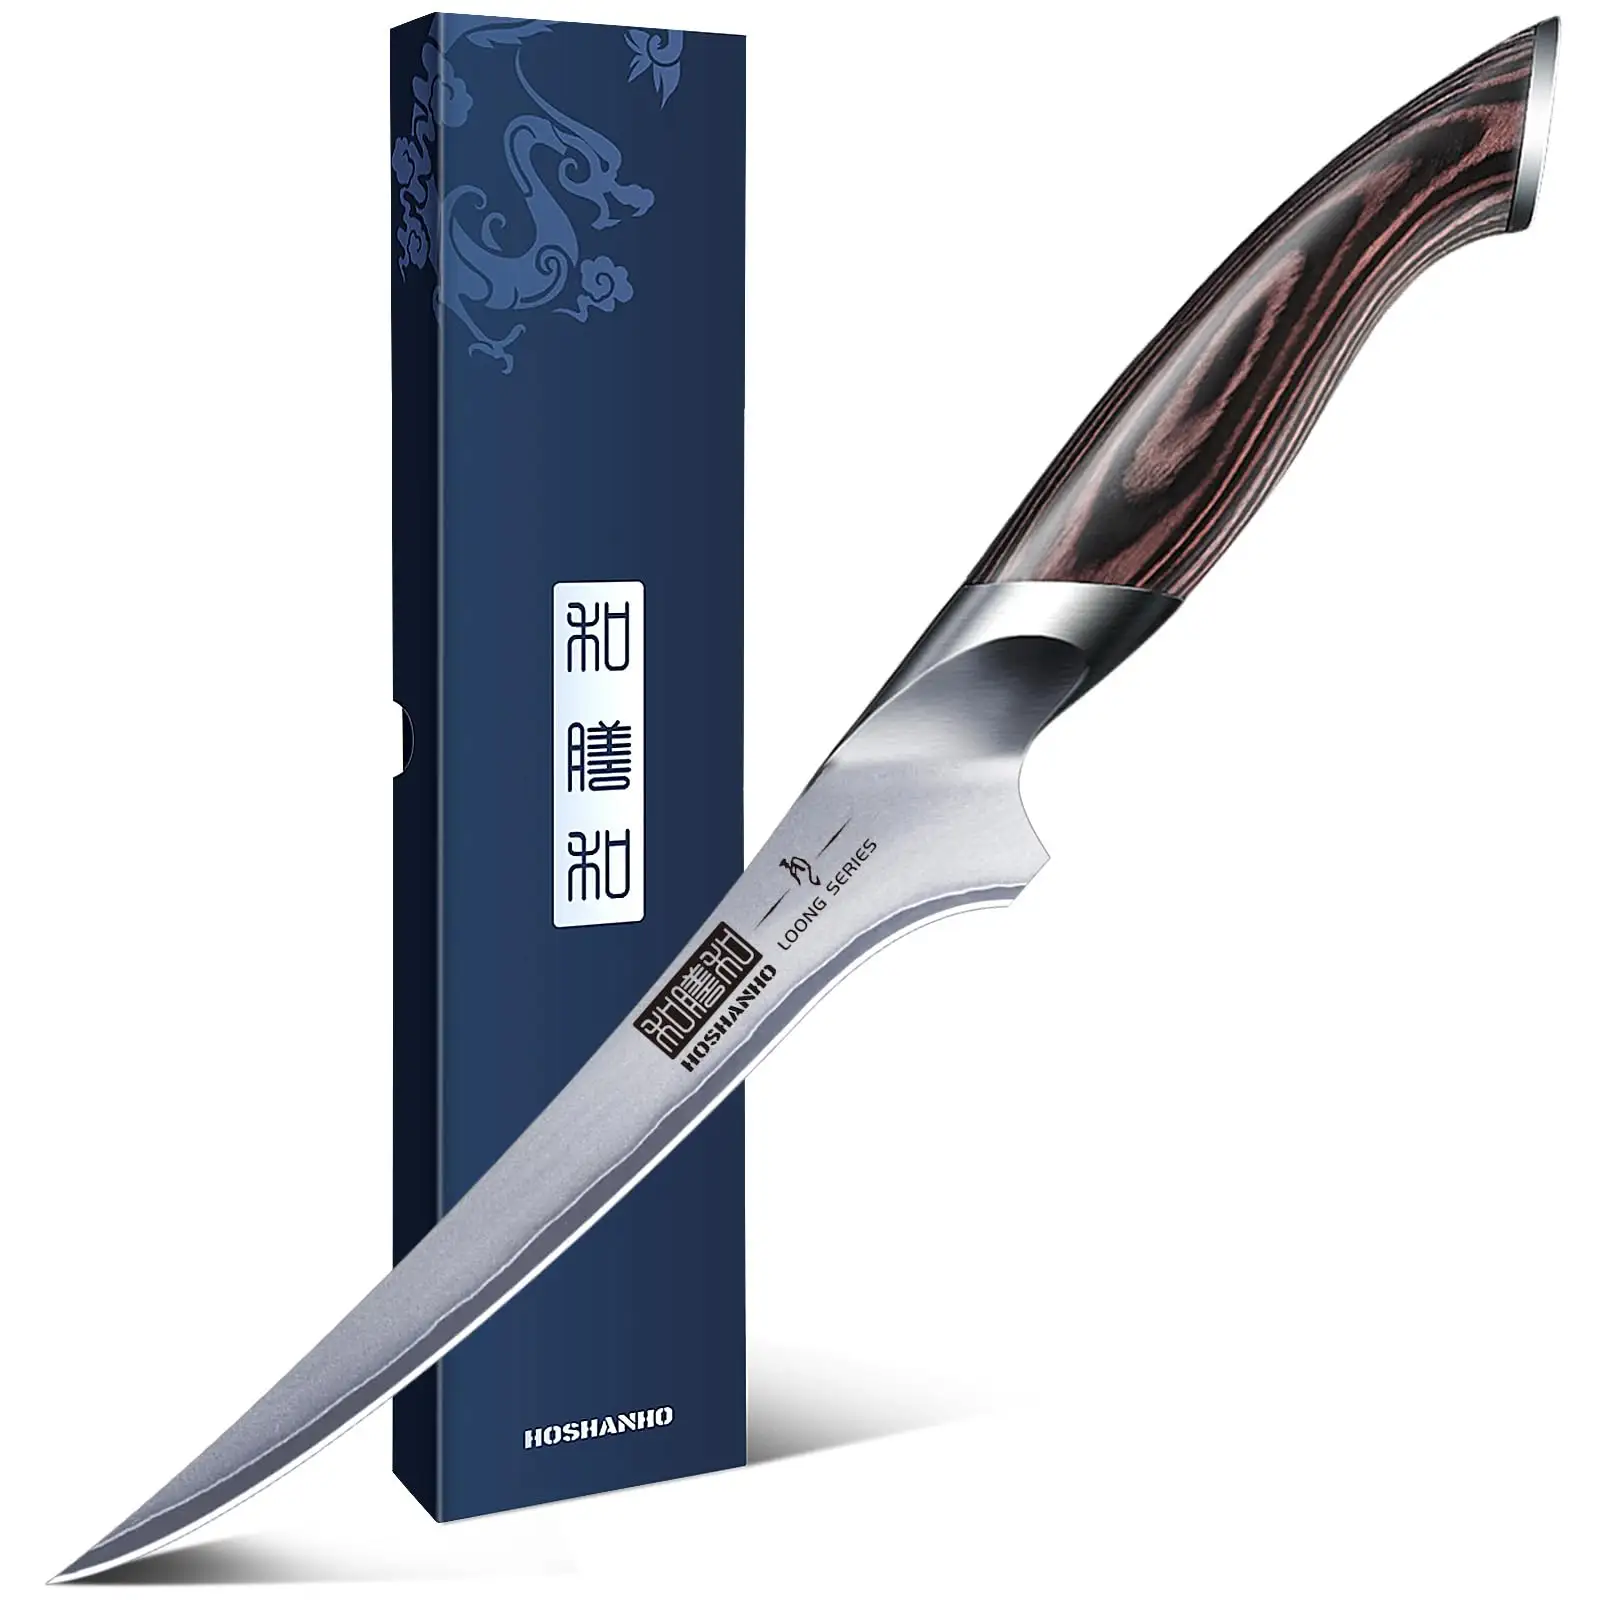 HOSHANHO Super Sharp Boning Knife in High Carbon Steel AUS-10 Fillet Knife 7 Inch Japanese Fish Knife